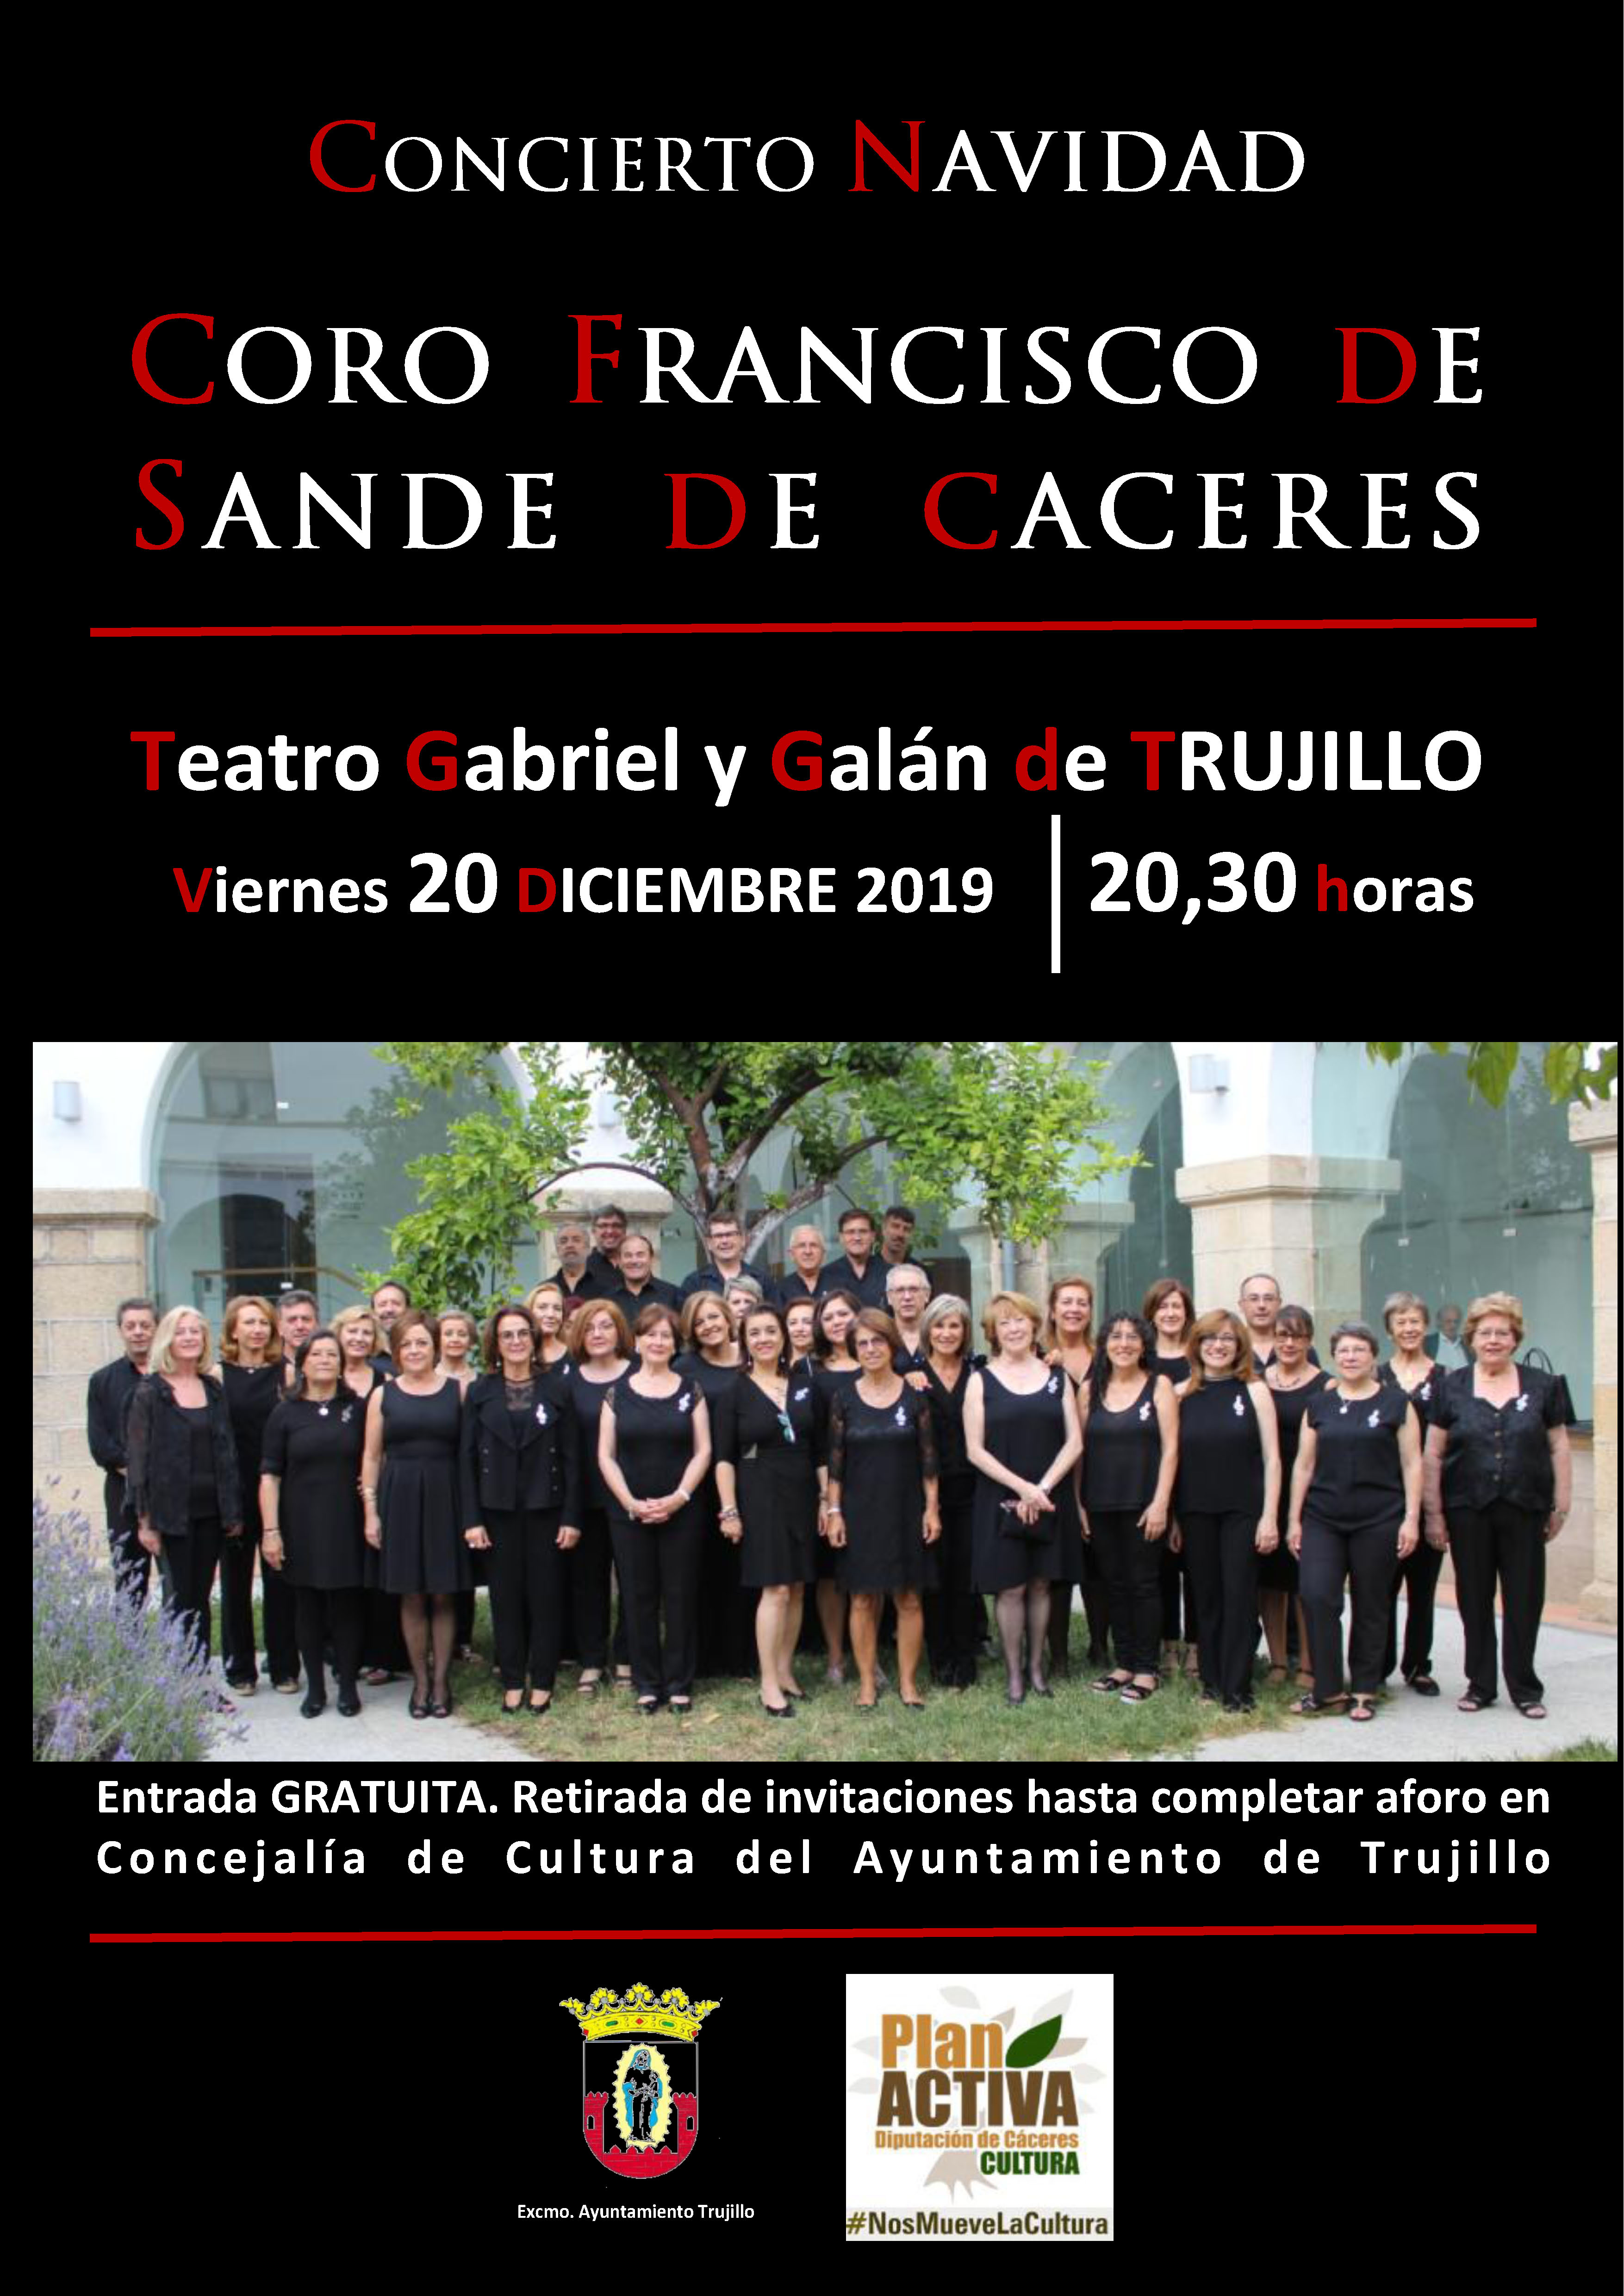 La Coral Francisco de Sande ofrecerá hoy un concierto en el teatro Gabriel y Galán